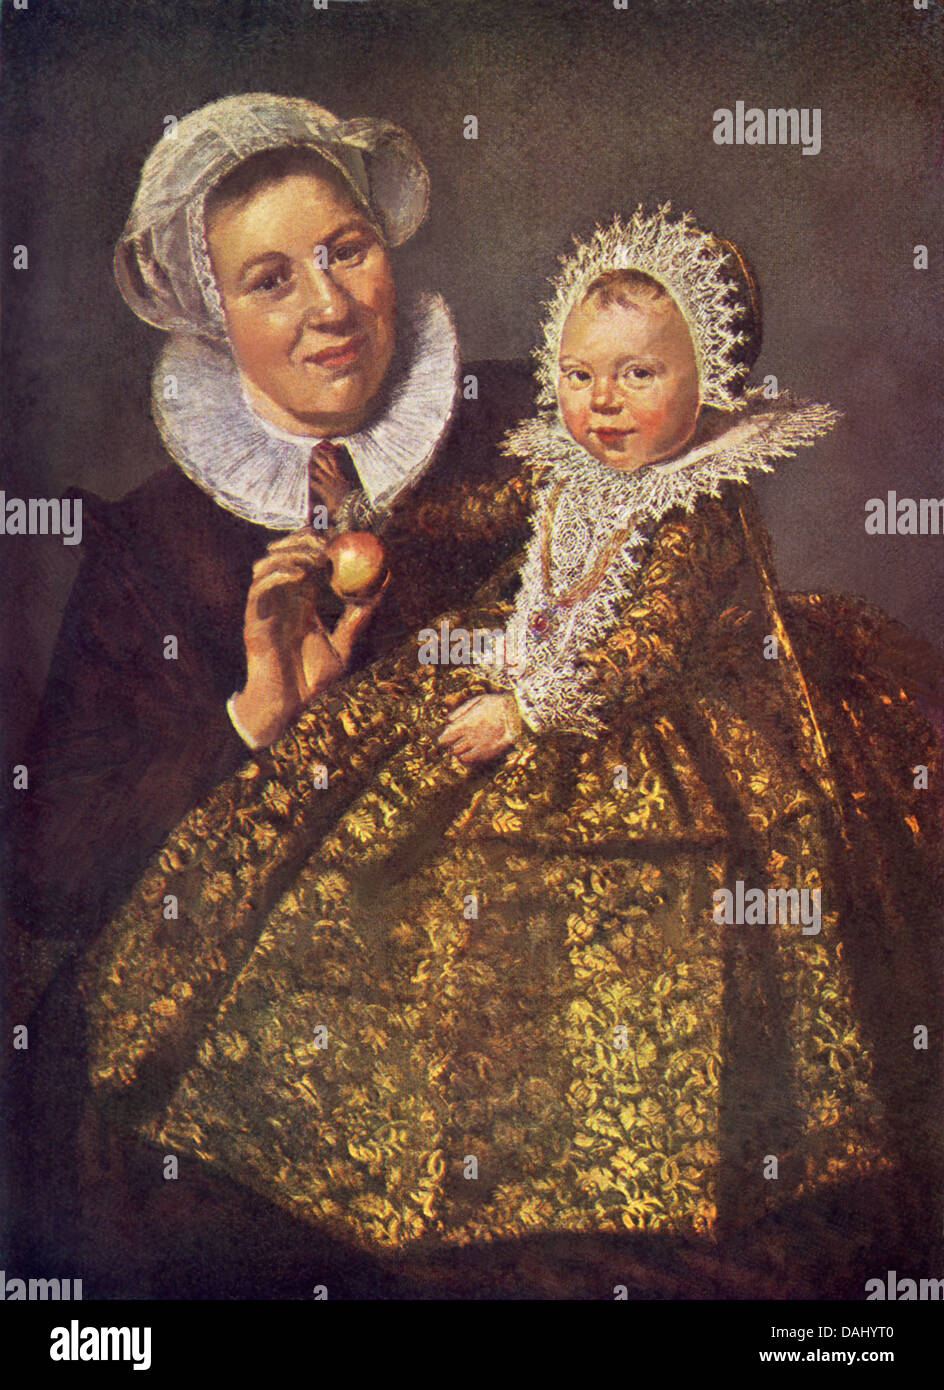 Franz Hals (c. 1582 – 1666), geboren im Süden der Niederlande – heute Belgien – diese Krankenschwester und Kind gemalt. Stockfoto